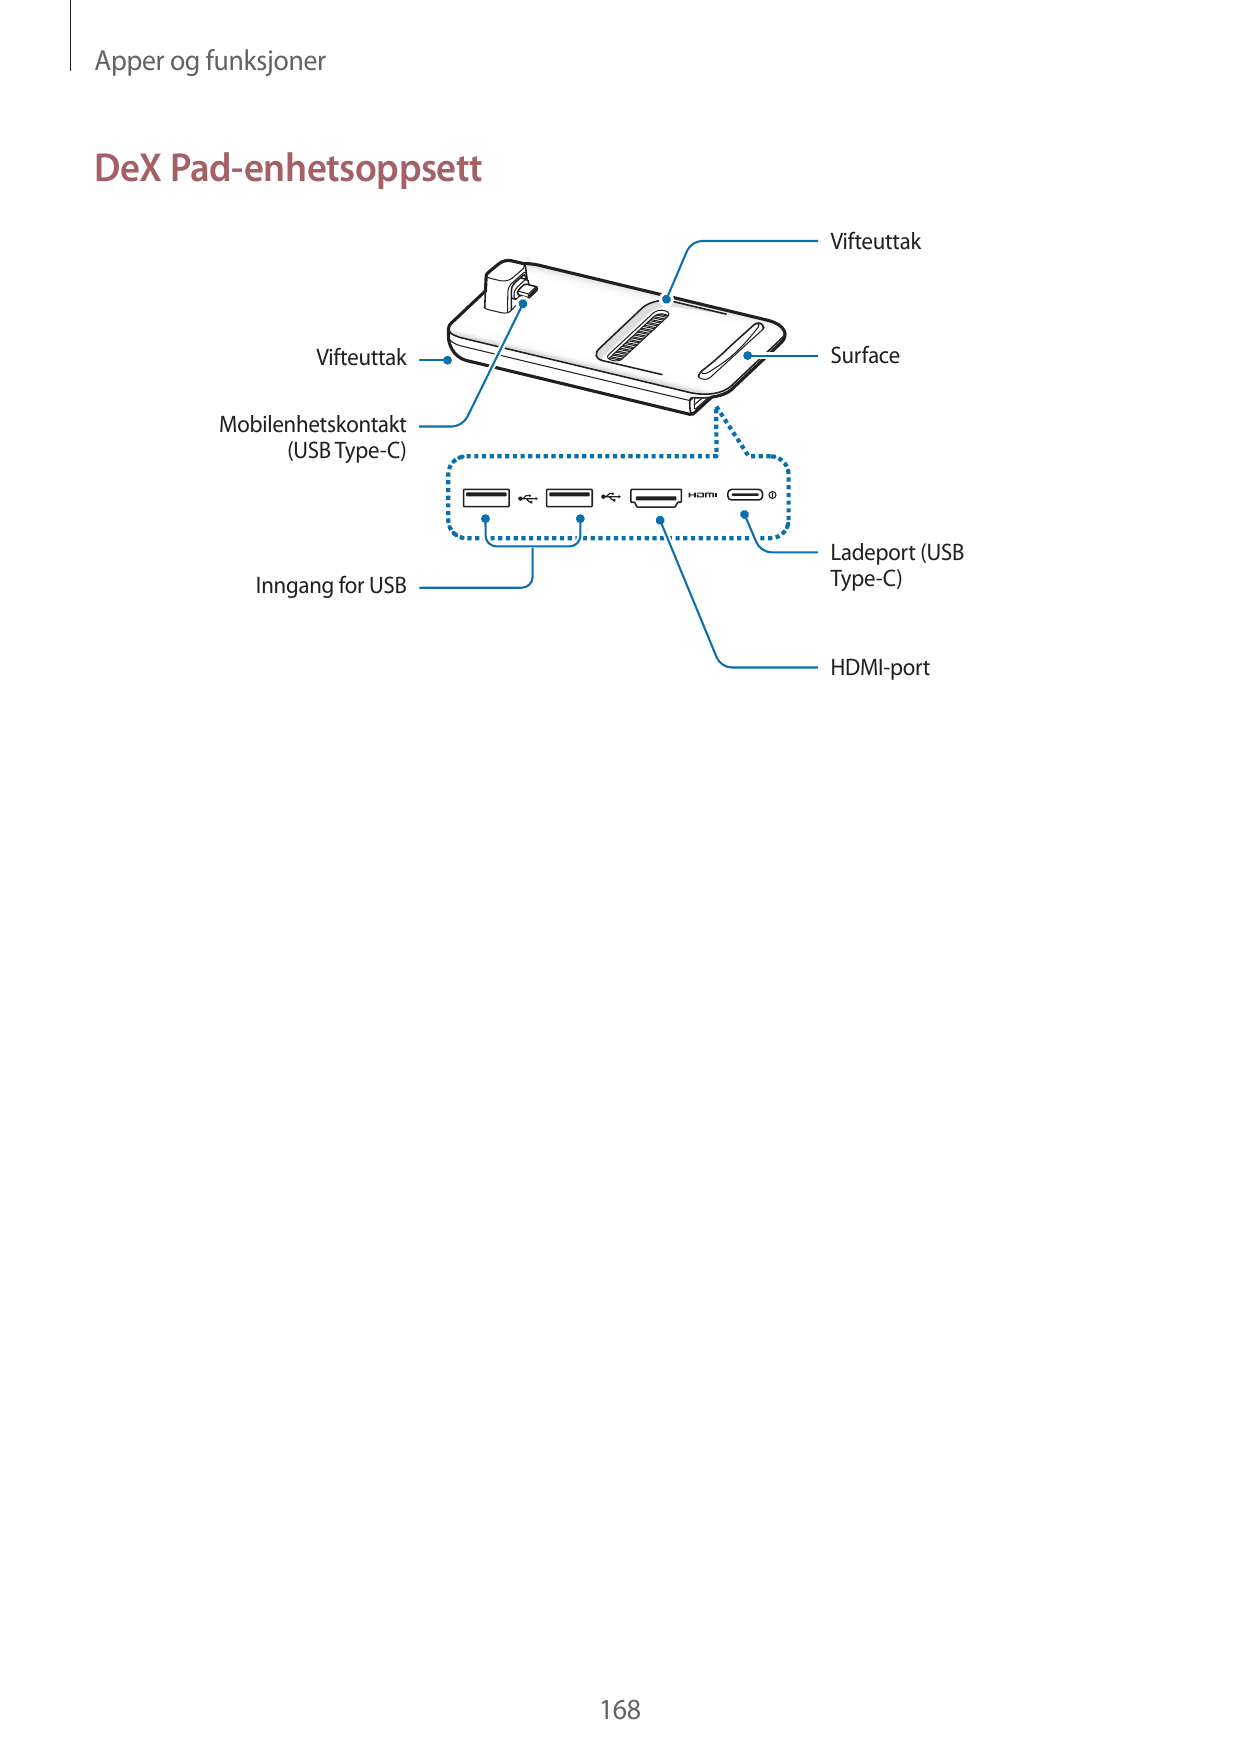 Apper og funksjonerDeX Pad-enhetsoppsettVifteuttakSurfaceVifteuttakMobilenhetskontakt(USB Type-C)Ladeport (USBType-C)Inngang for